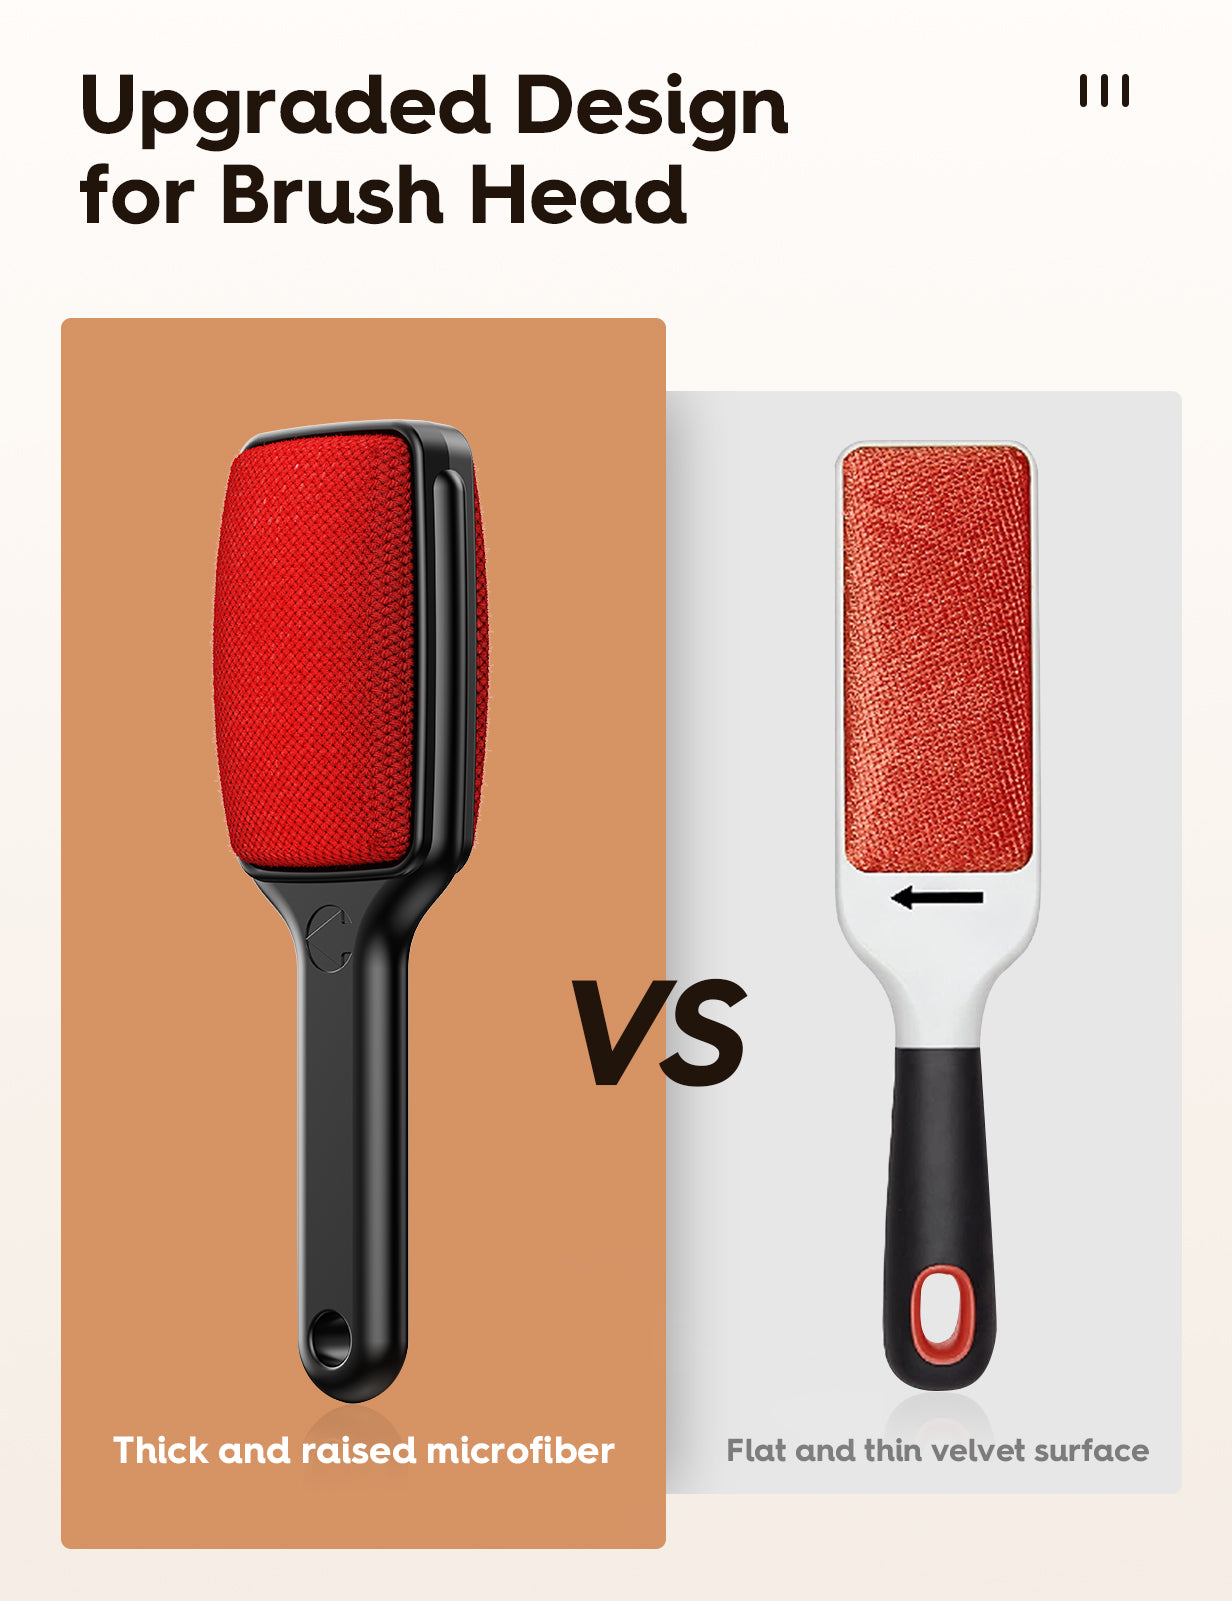 VASSON Lint Brush, Double-Sided Lint Remover Brush, Lint Brushes for Clothes, Reusable Velvet lint Brush, Coat Lint Brush